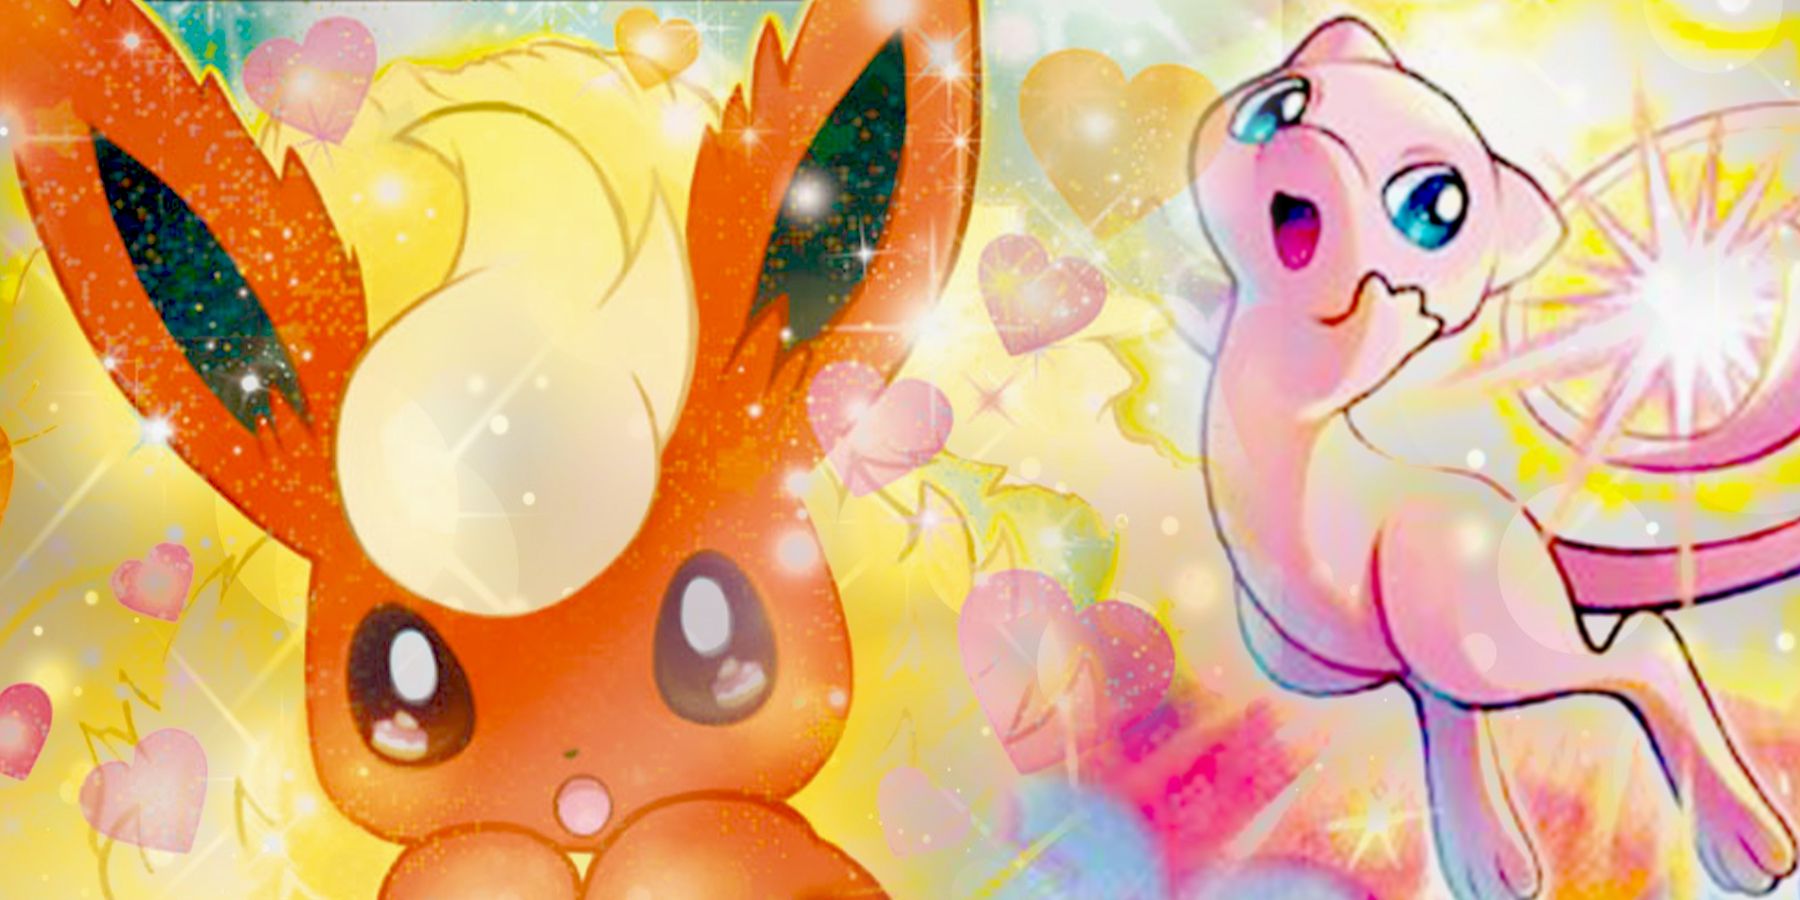 Cartas Pokémon com artes exclusivas!, Artigos LigaMagic